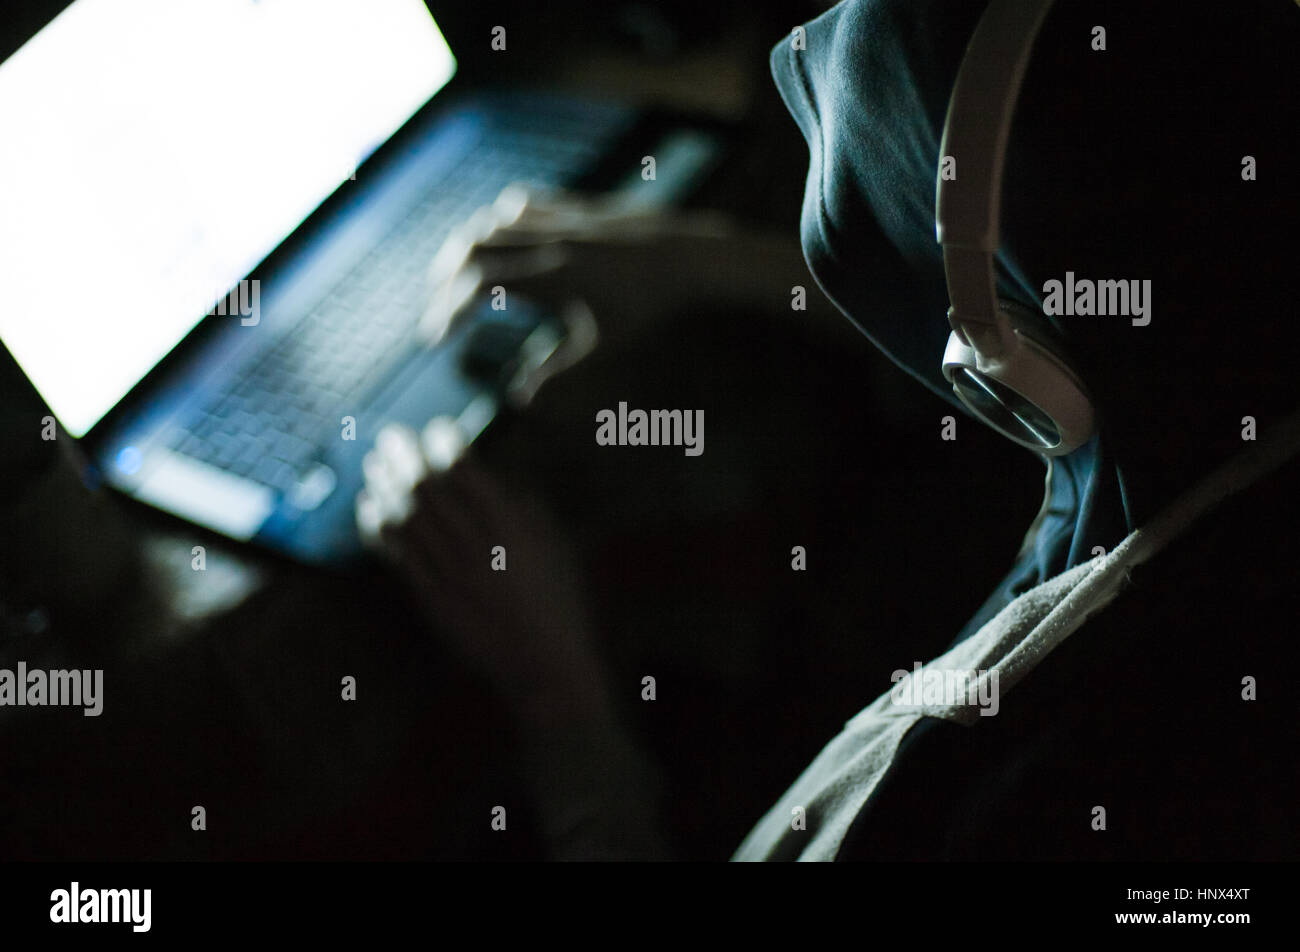 Homme hacker dans le capot et écouteurs working on laptop in the dark Banque D'Images